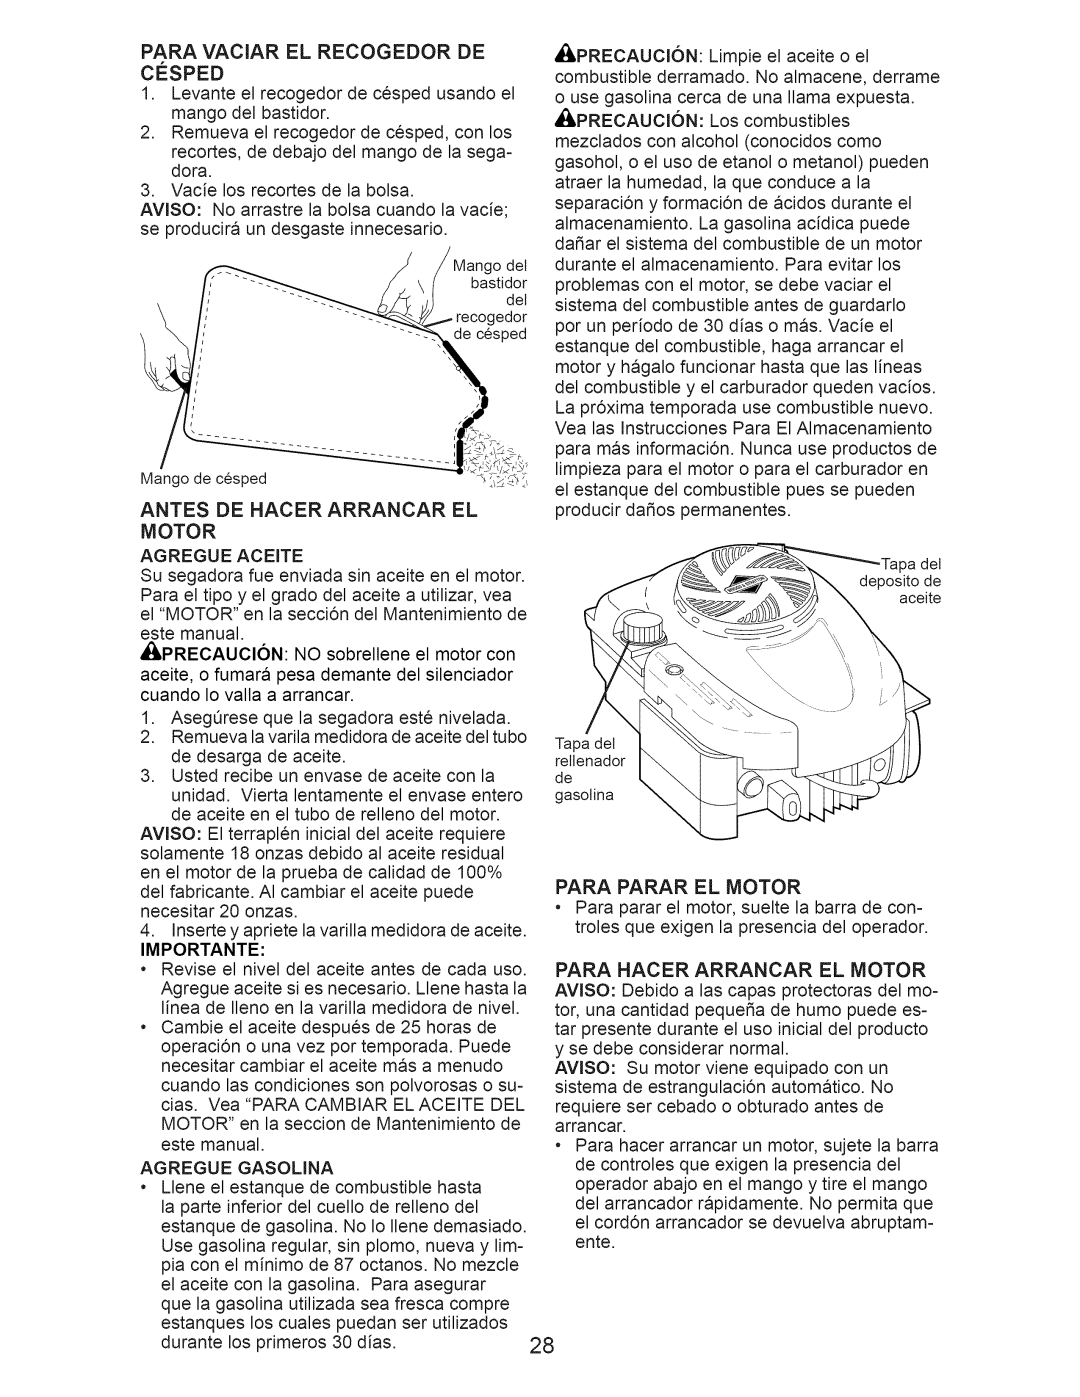 Craftsman 917.374043 Antes Dehacerarrancarel Motor, Para Hacer Arrancar El Motor, Importante, Para Parar El Motor 